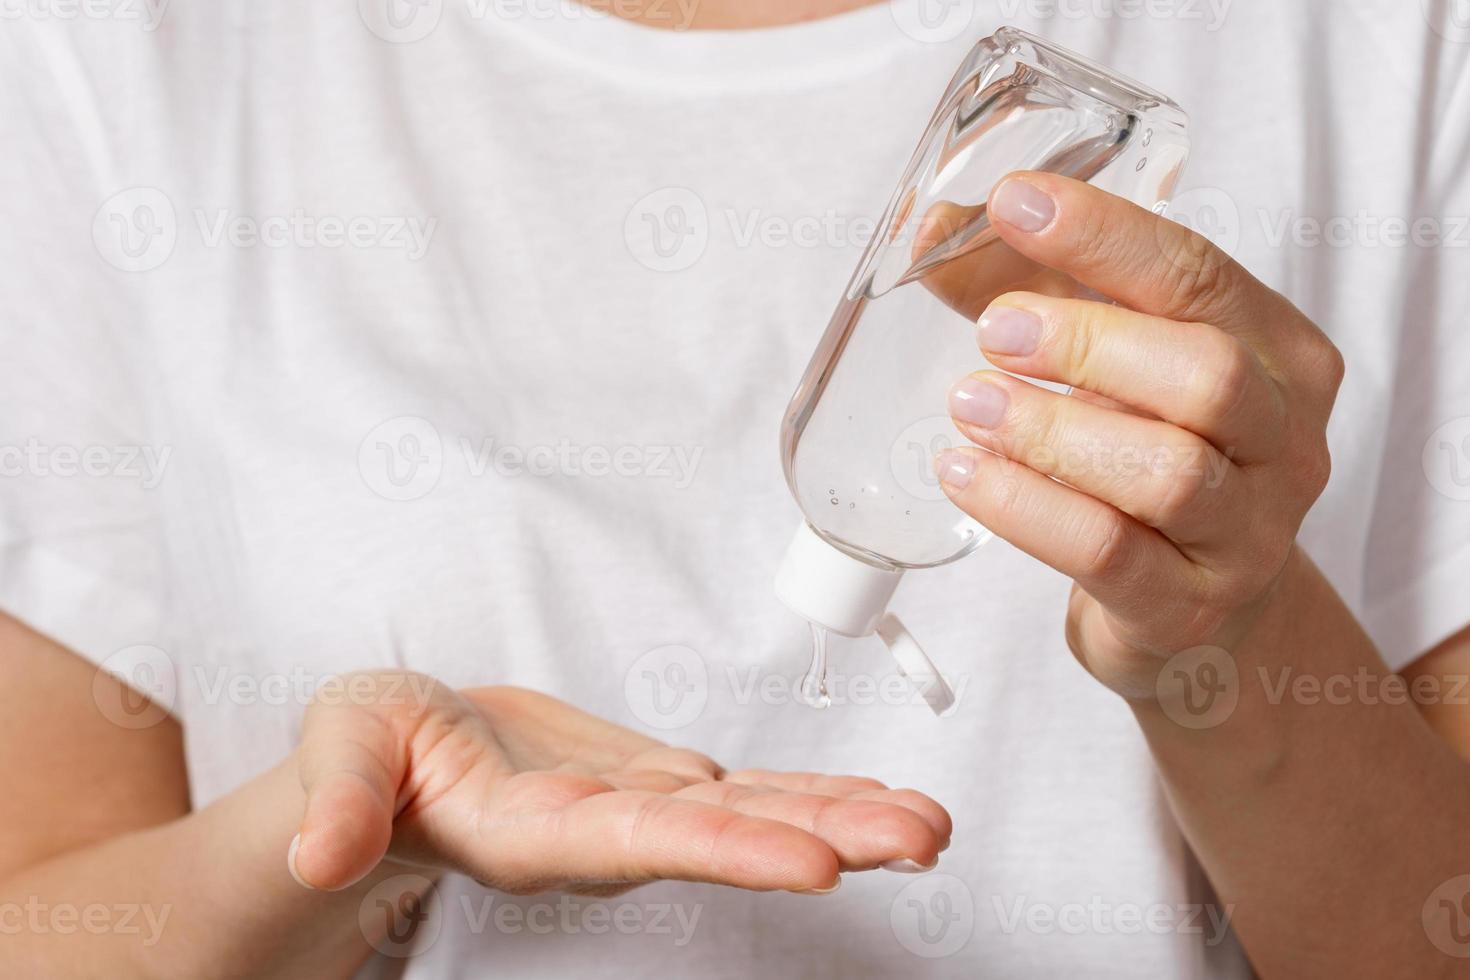 femme avec une petite bouteille de désinfectant pour les mains photo